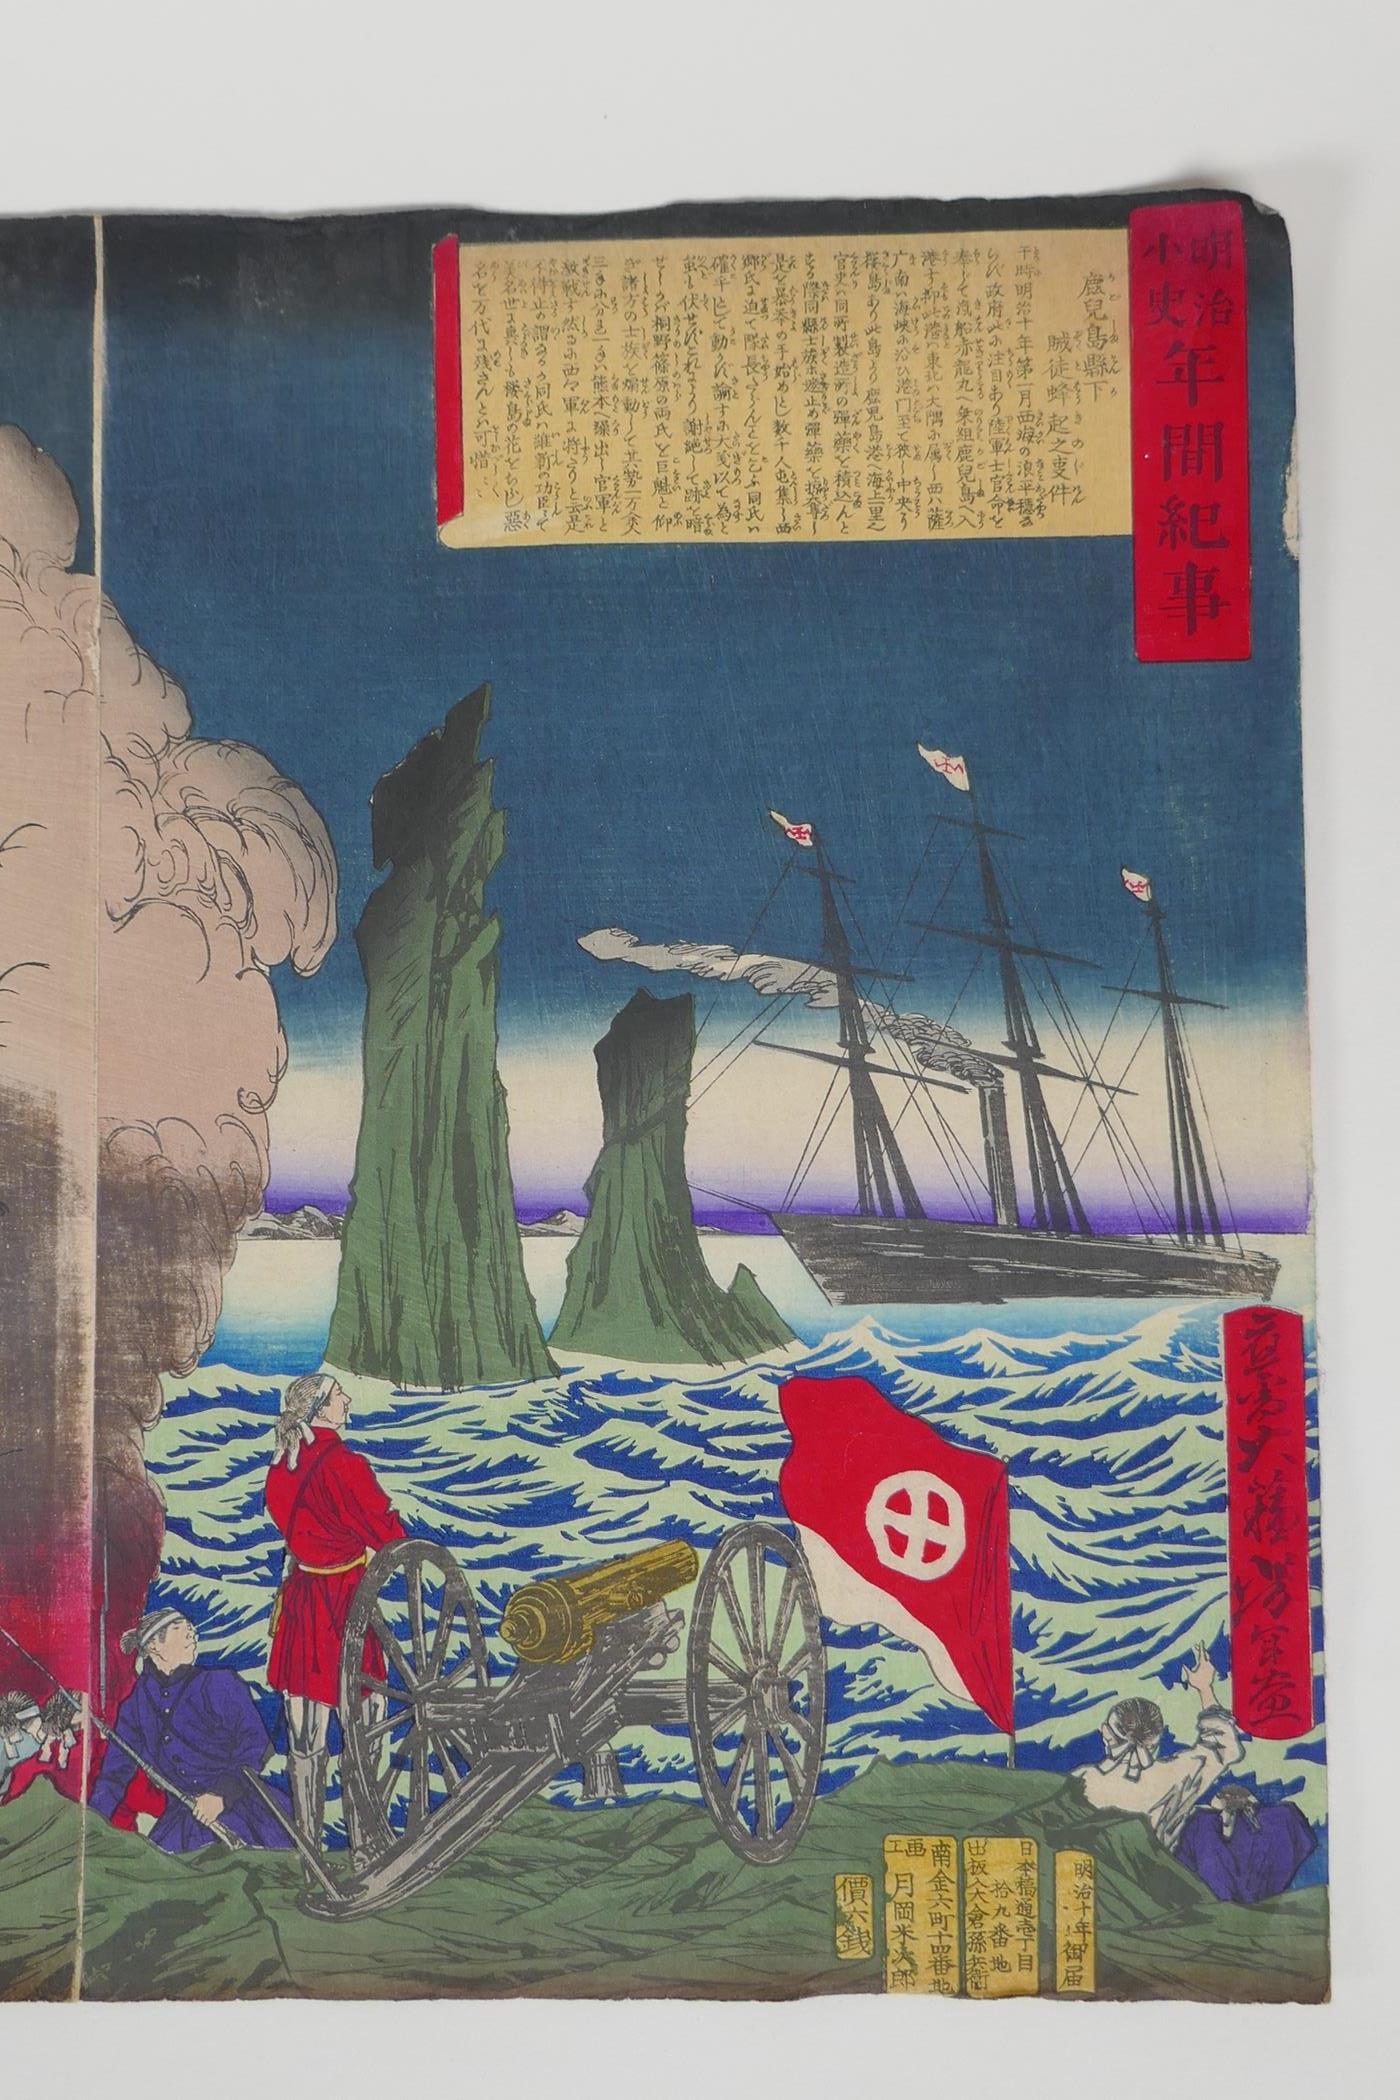 Tsukioka Yoshitoshi, (Japanese, 1839 - 1892), 'Insurrection in Kagoshima' or 'The Rebel Insurrection - Image 4 of 9